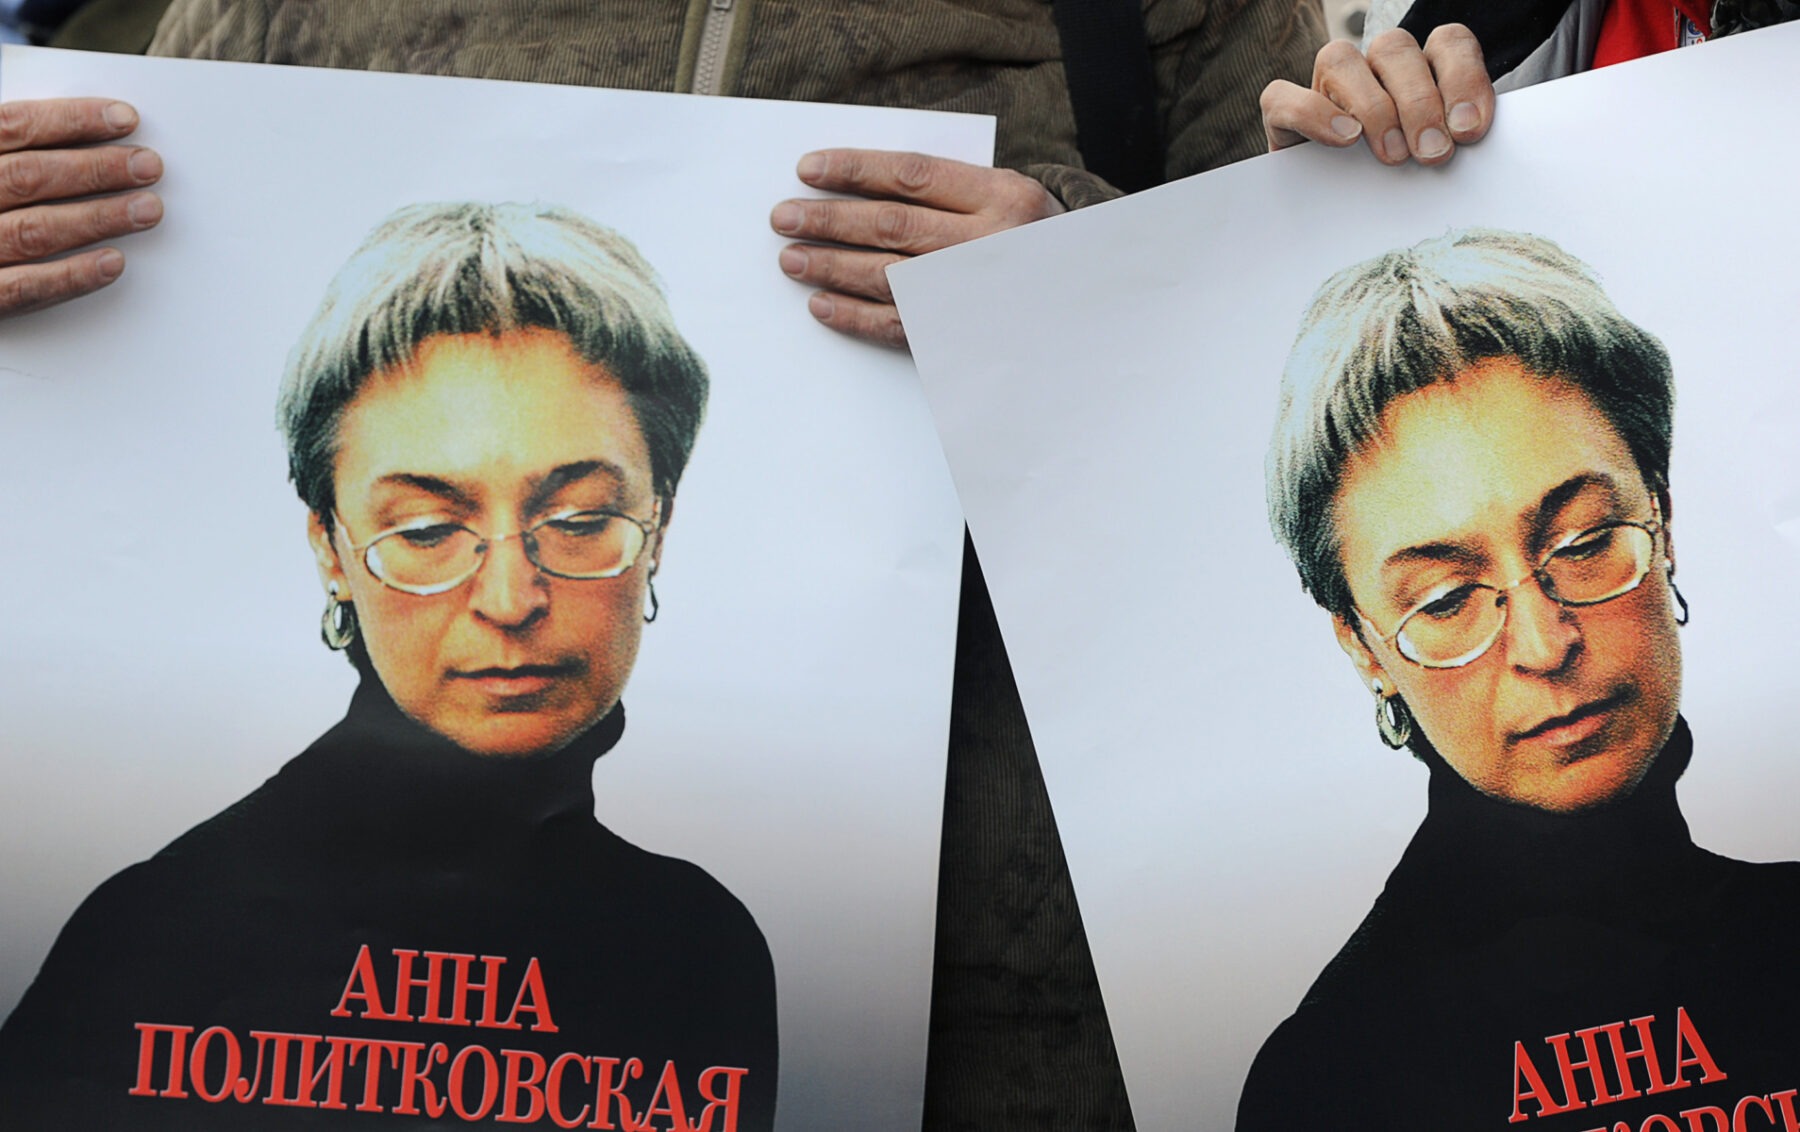 De ziua de naștere a lui Putin, criticii Kremlinului îi aduc un omagiu jurnalistei ruse Anna Politkovskaia, asasinată la Moscova în urmă cu 16 ani